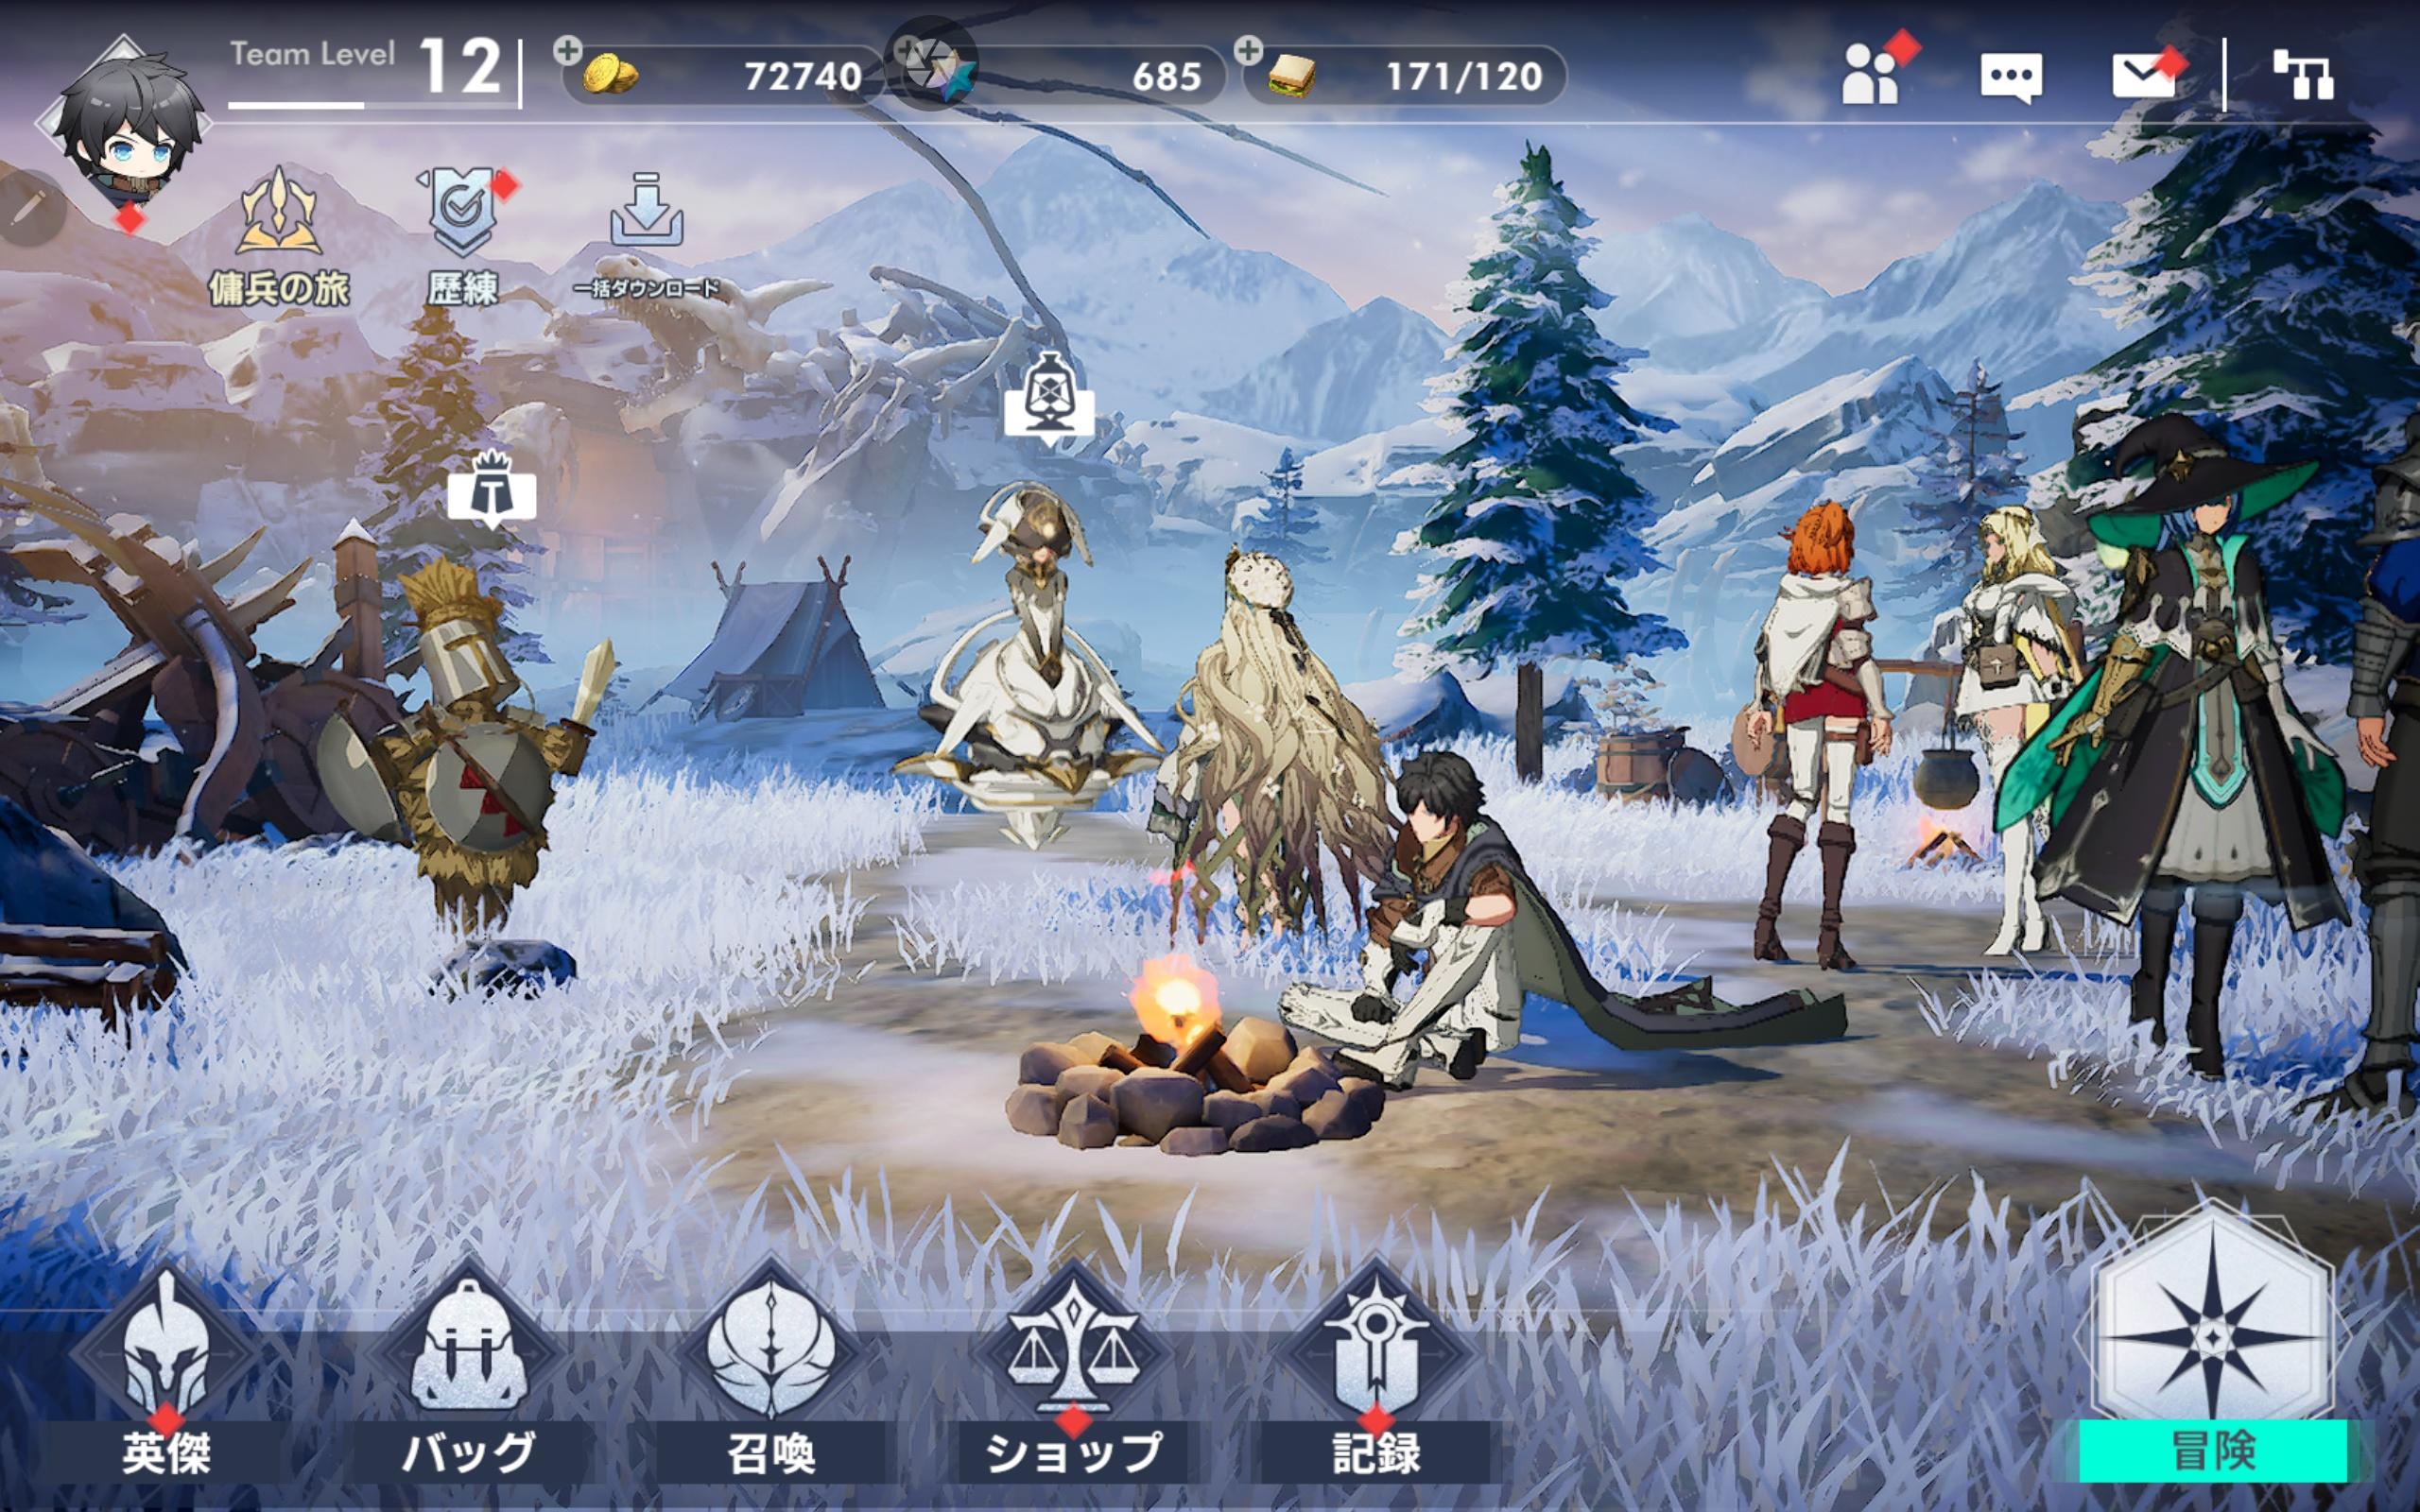 アルケランド screenshot game